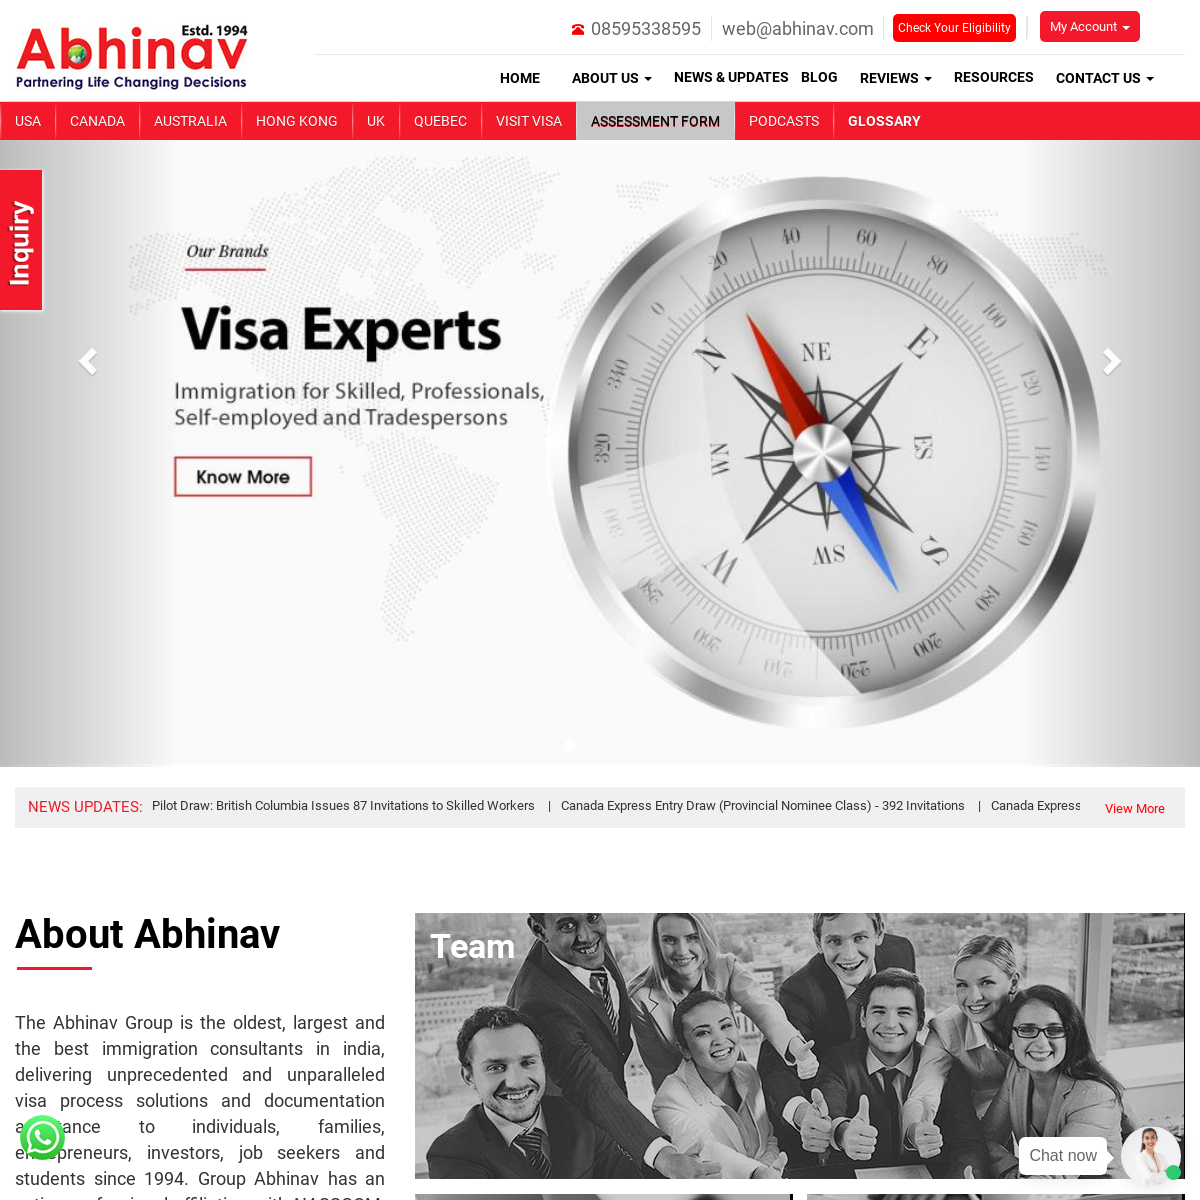 A complete backup of abhinav.com